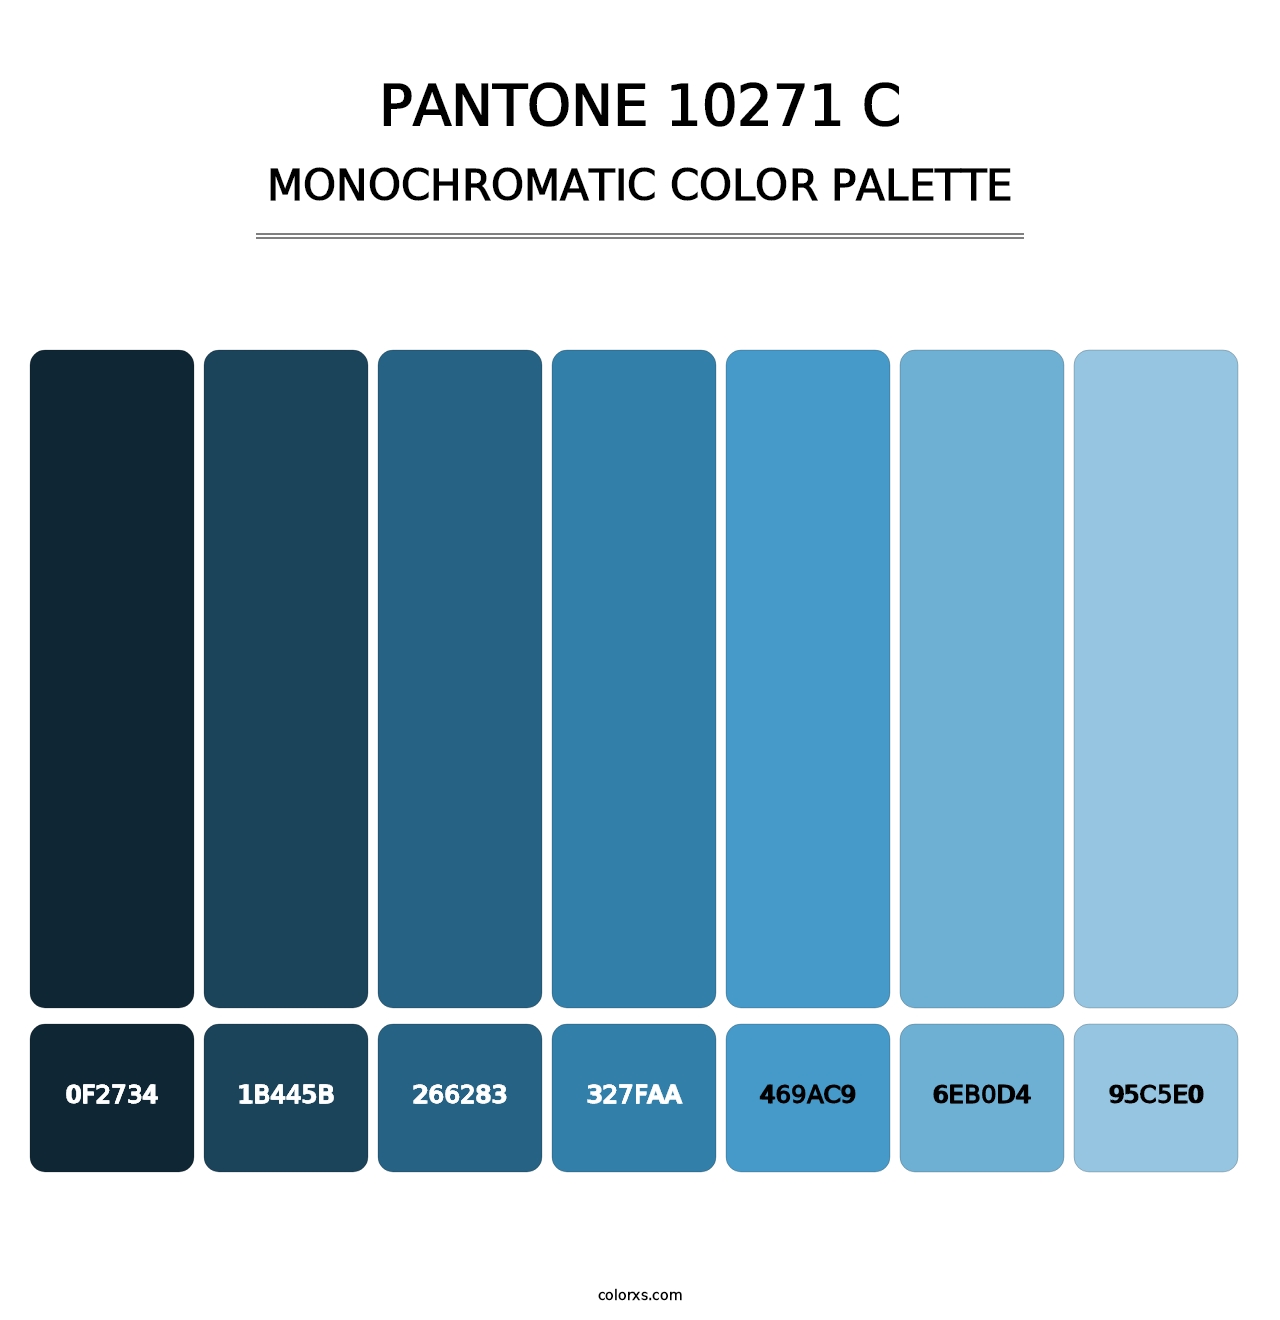 PANTONE 10271 C - Monochromatic Color Palette